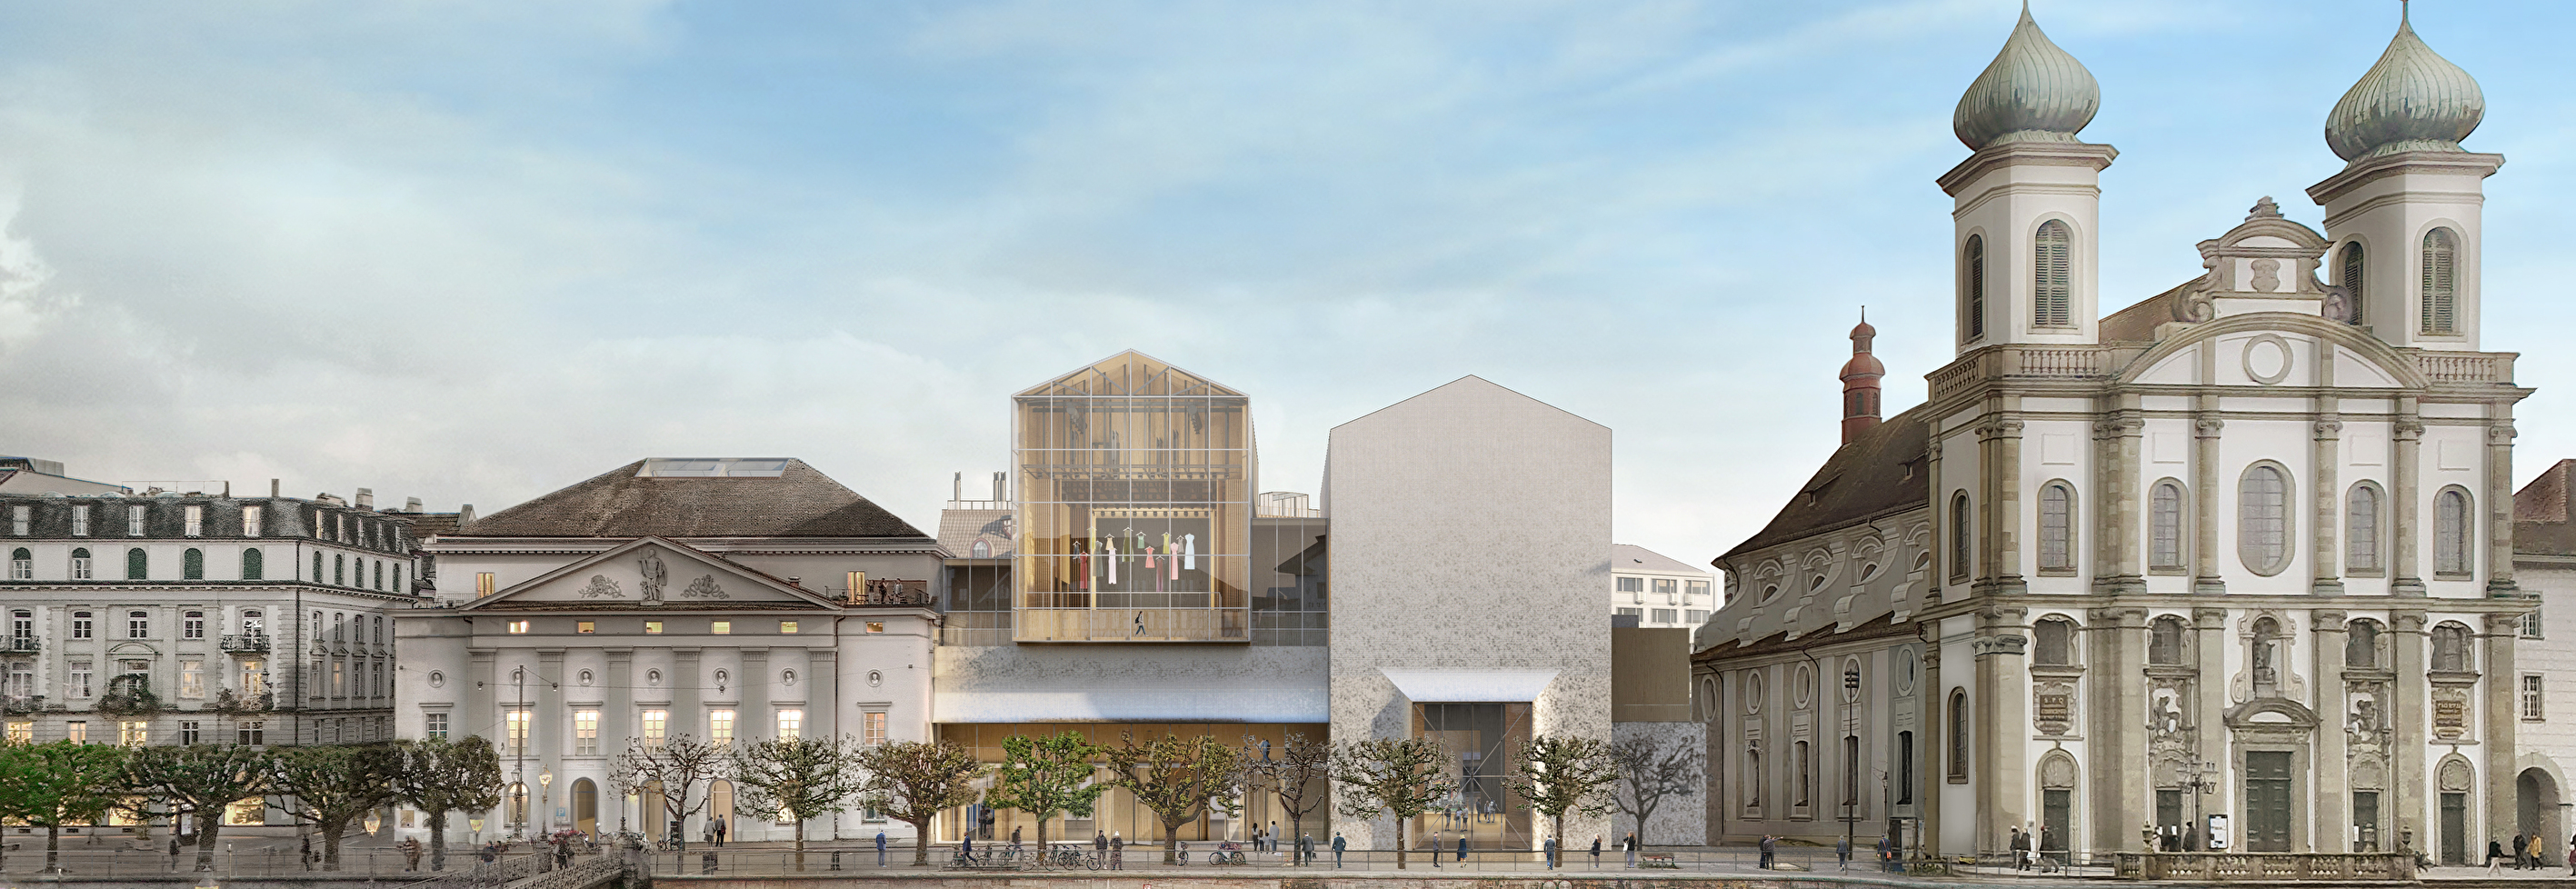 Visualisierung Neues Luzerner Theater